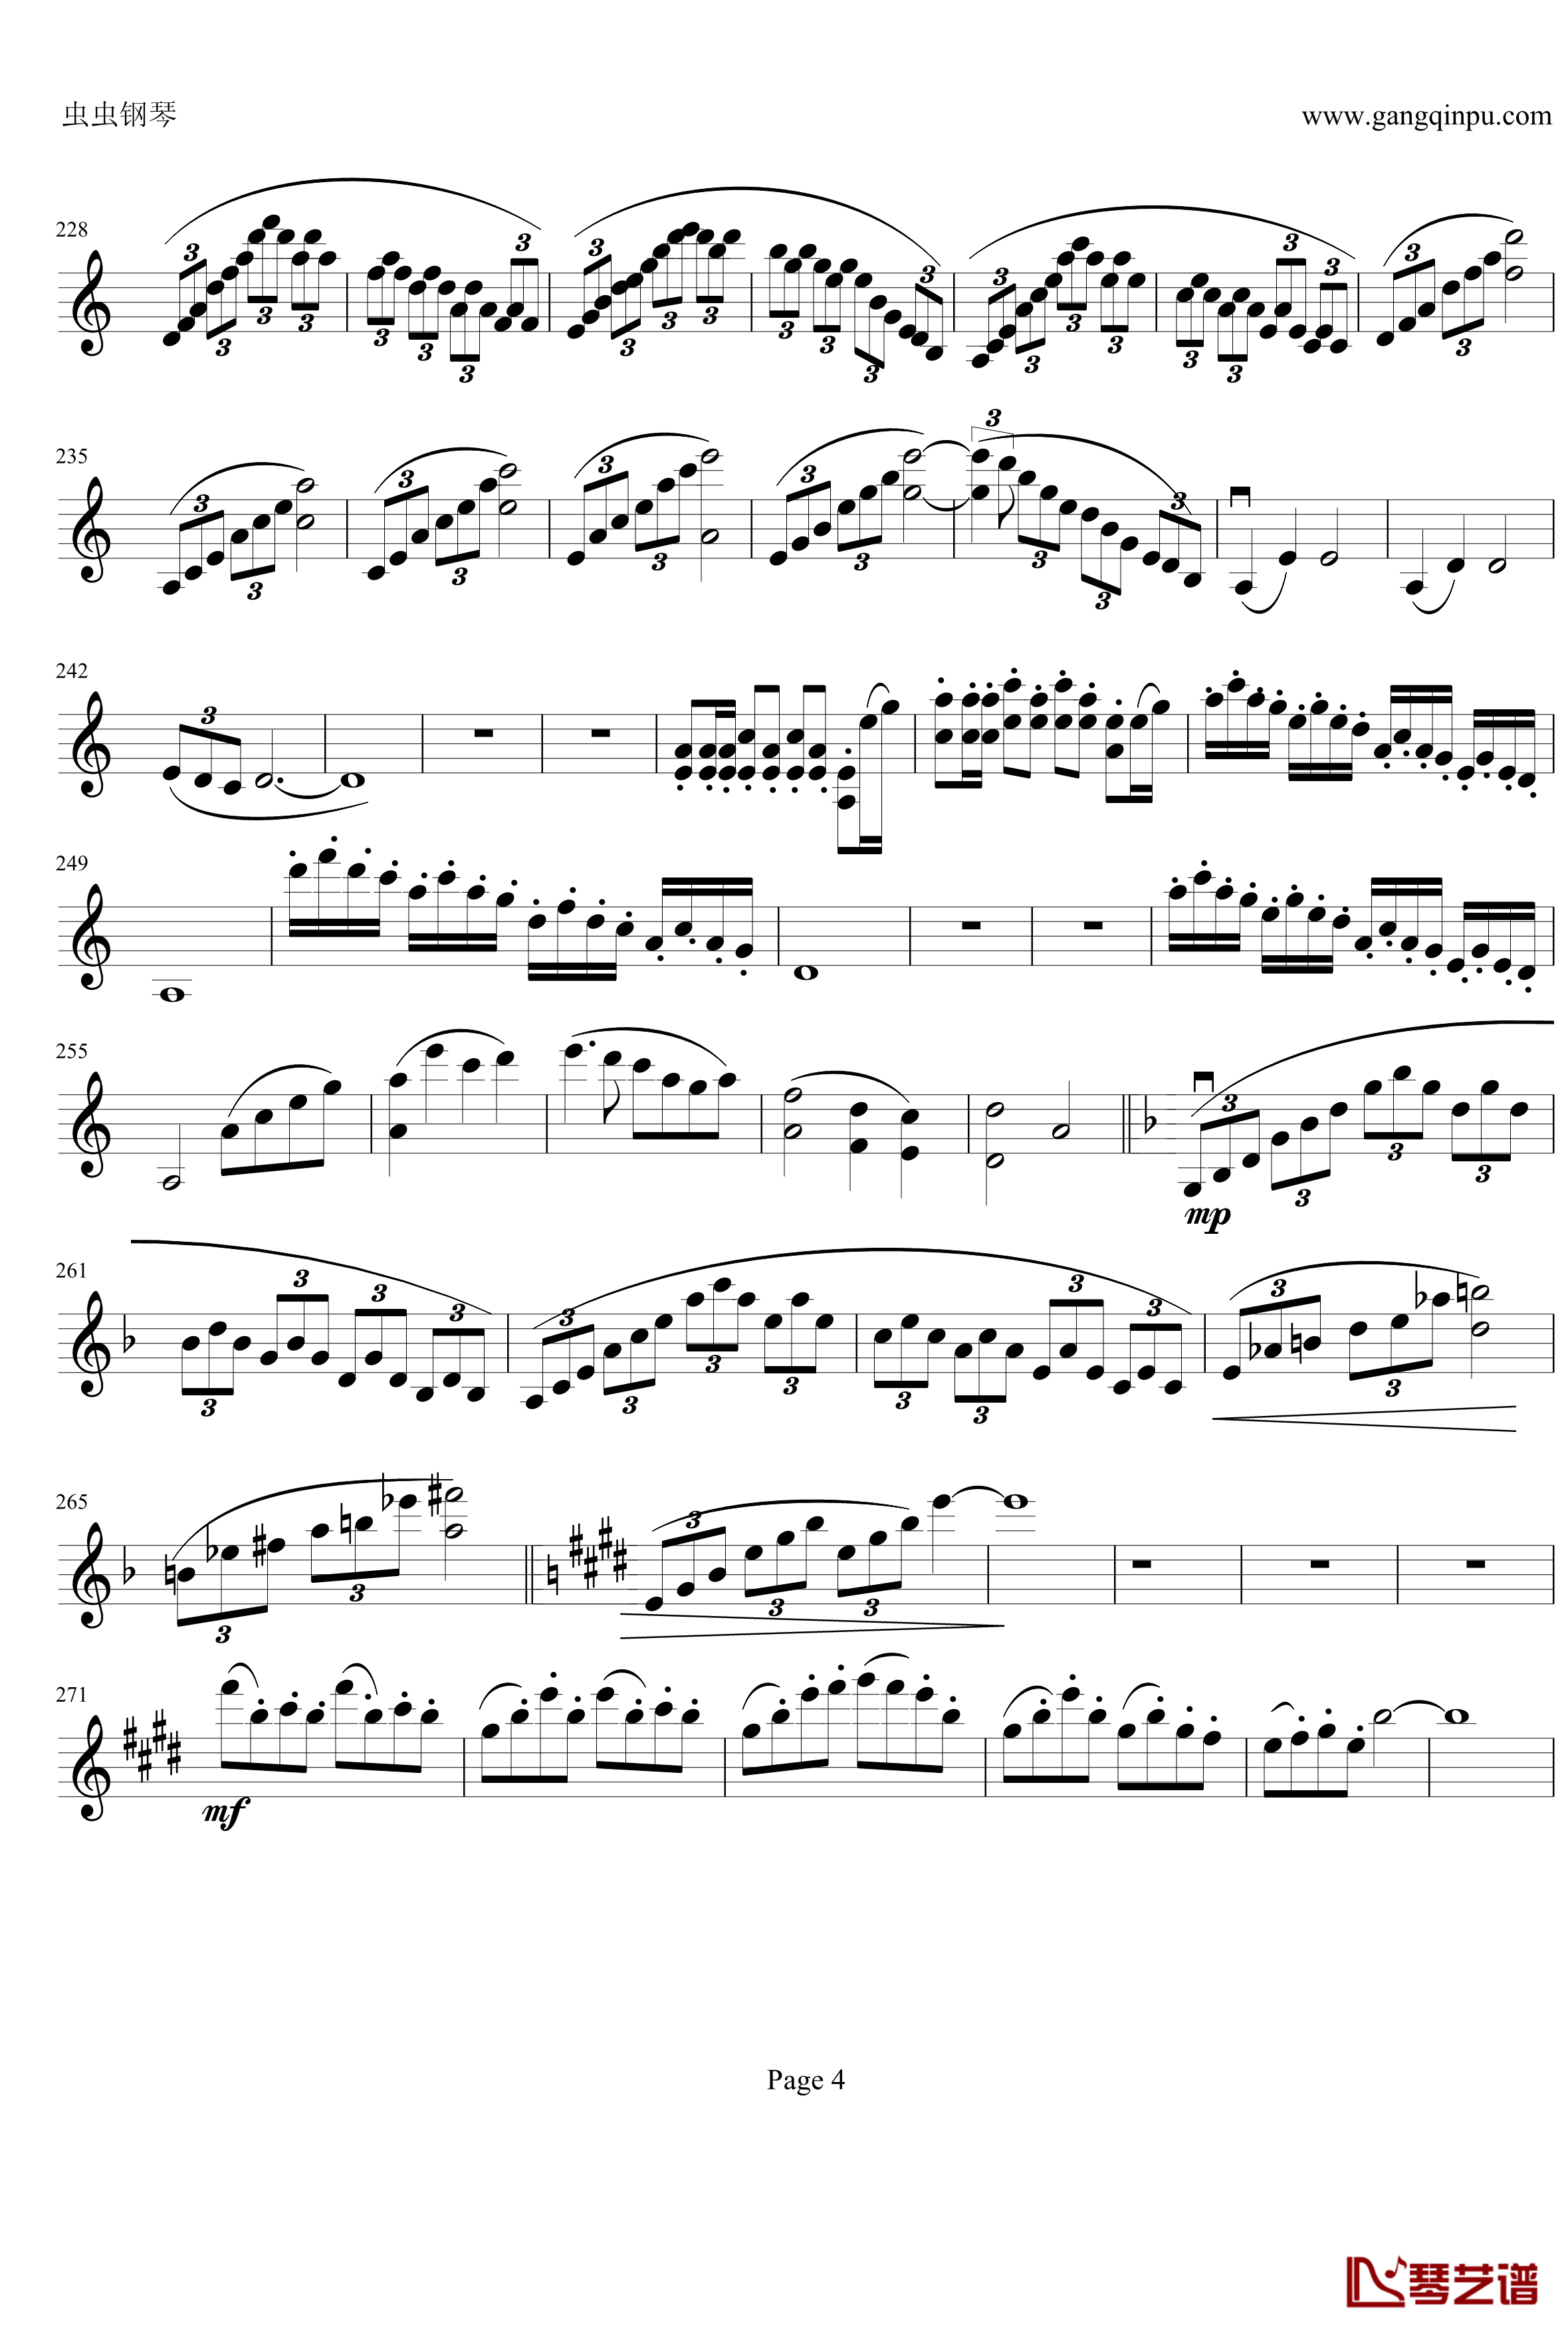 云南风情钢琴谱-第一乐章-b小调小提琴协奏曲-项道荣4